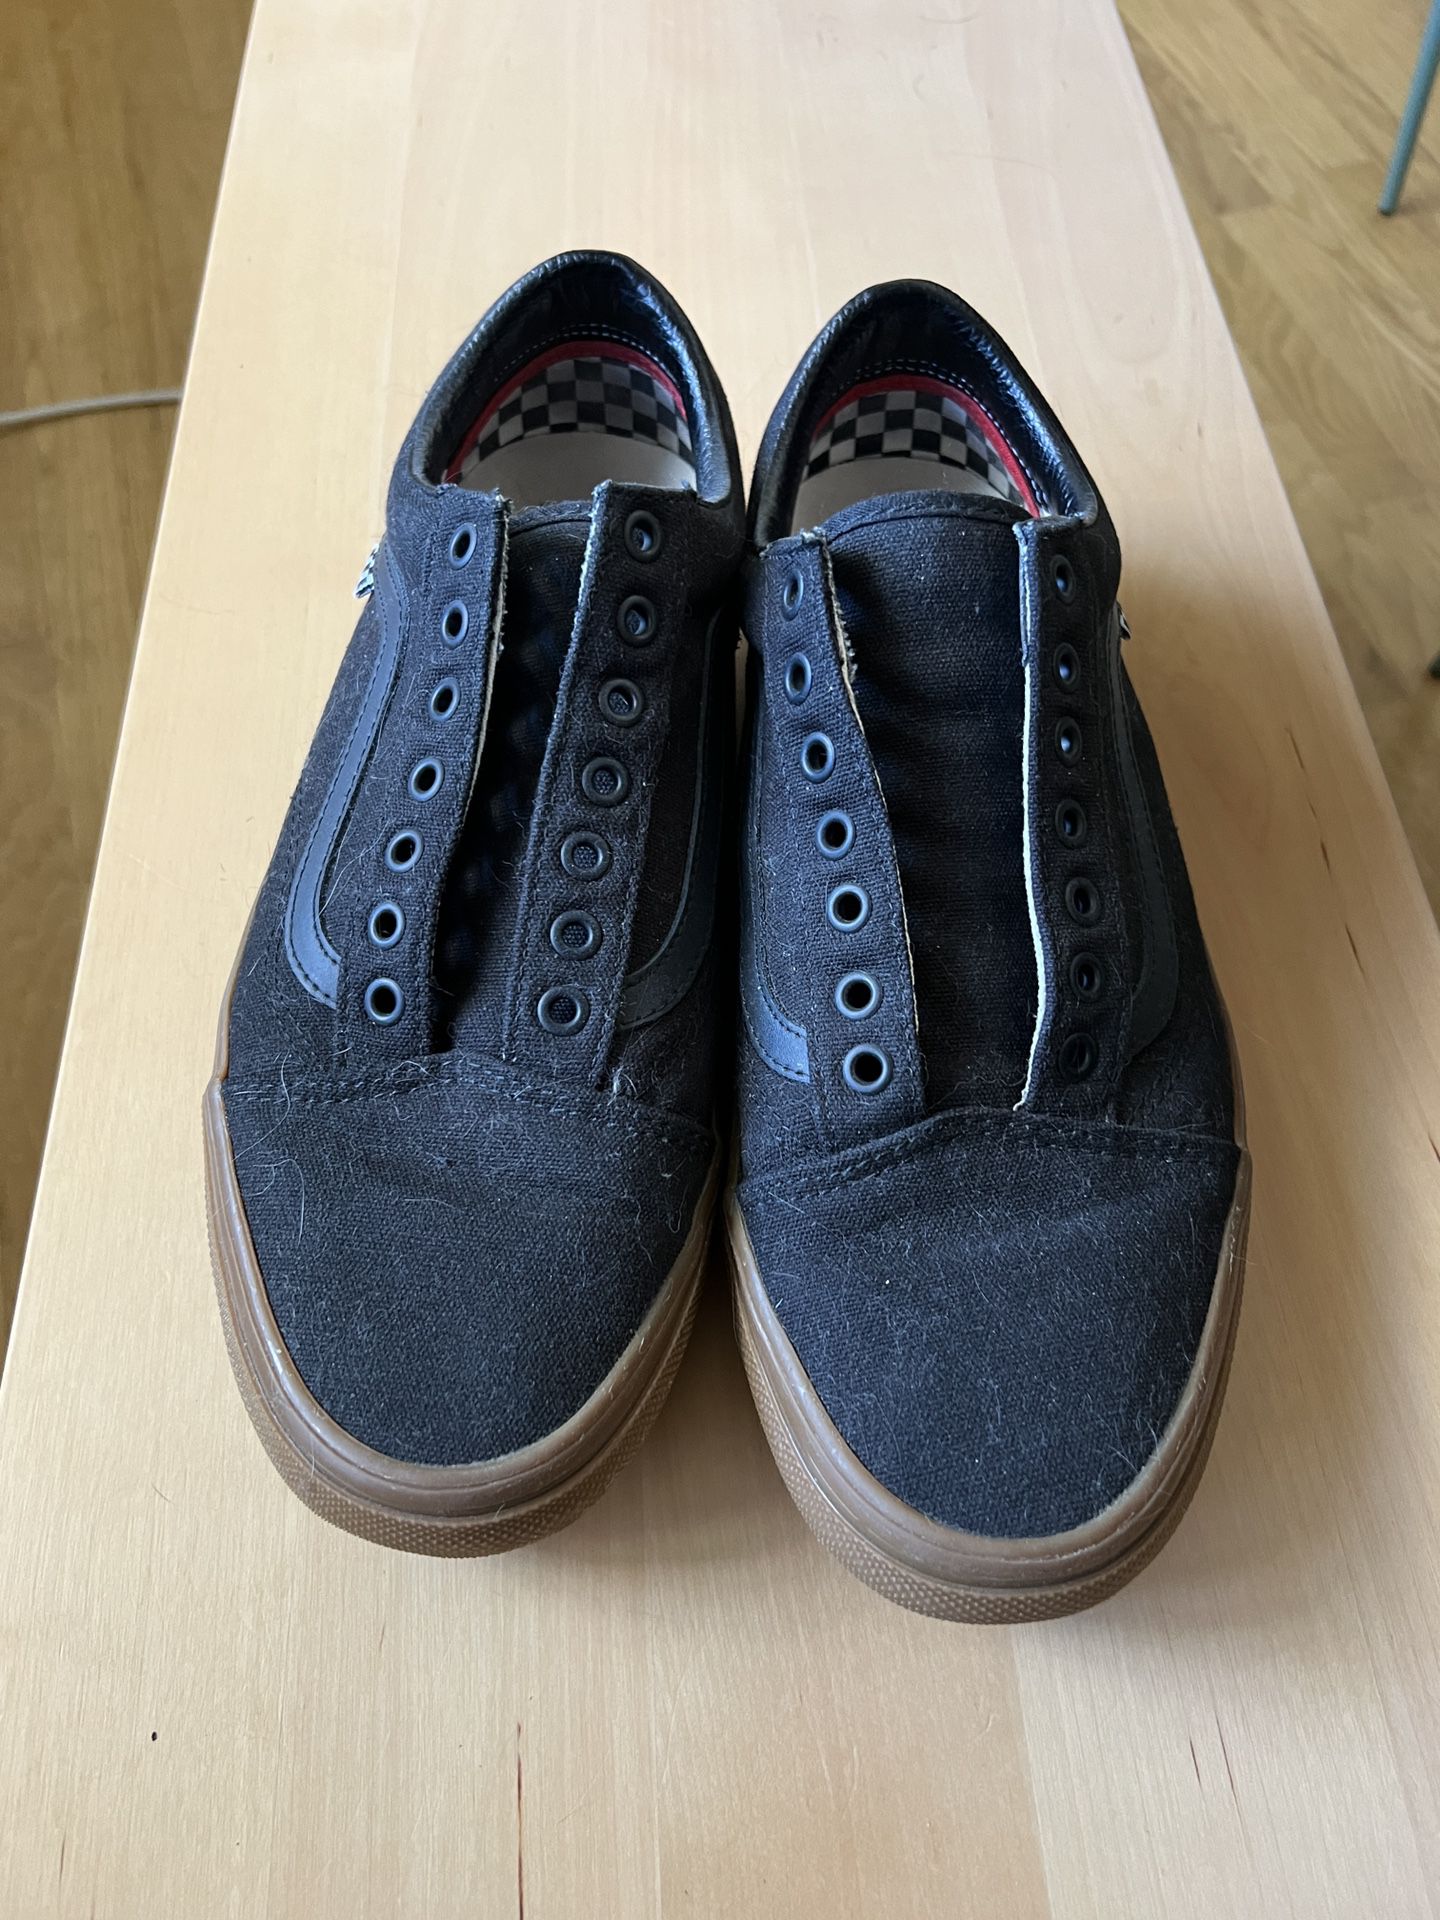 Vans Black Old Skool Shoes